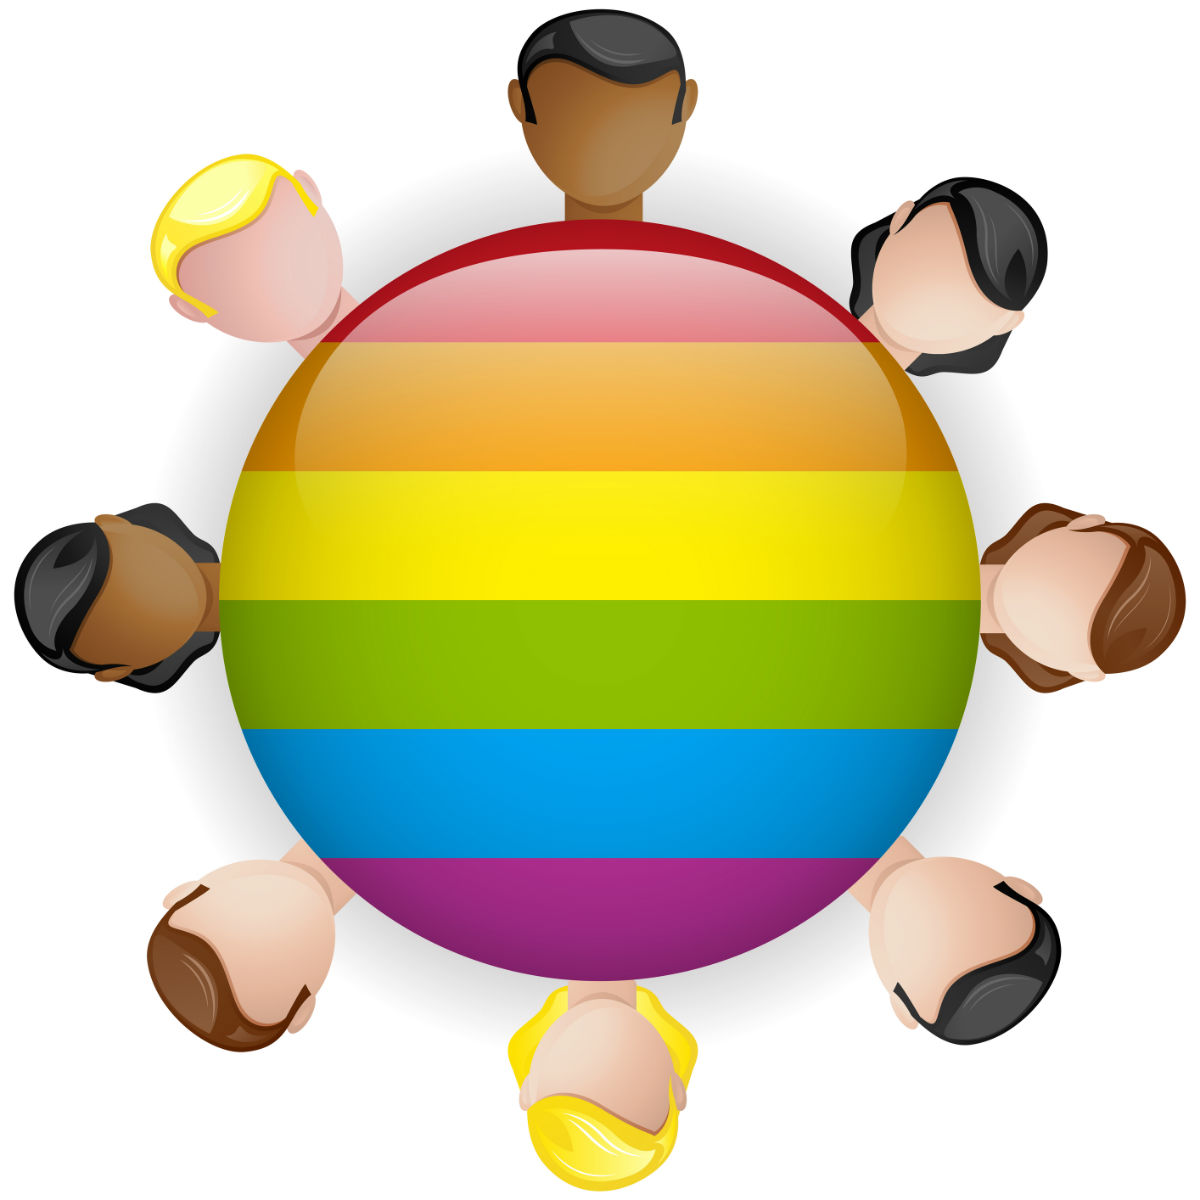 En la actualidad ya no se considera la heterosexualidad y la homosexualidad como dos polos opuestos y rígidos.